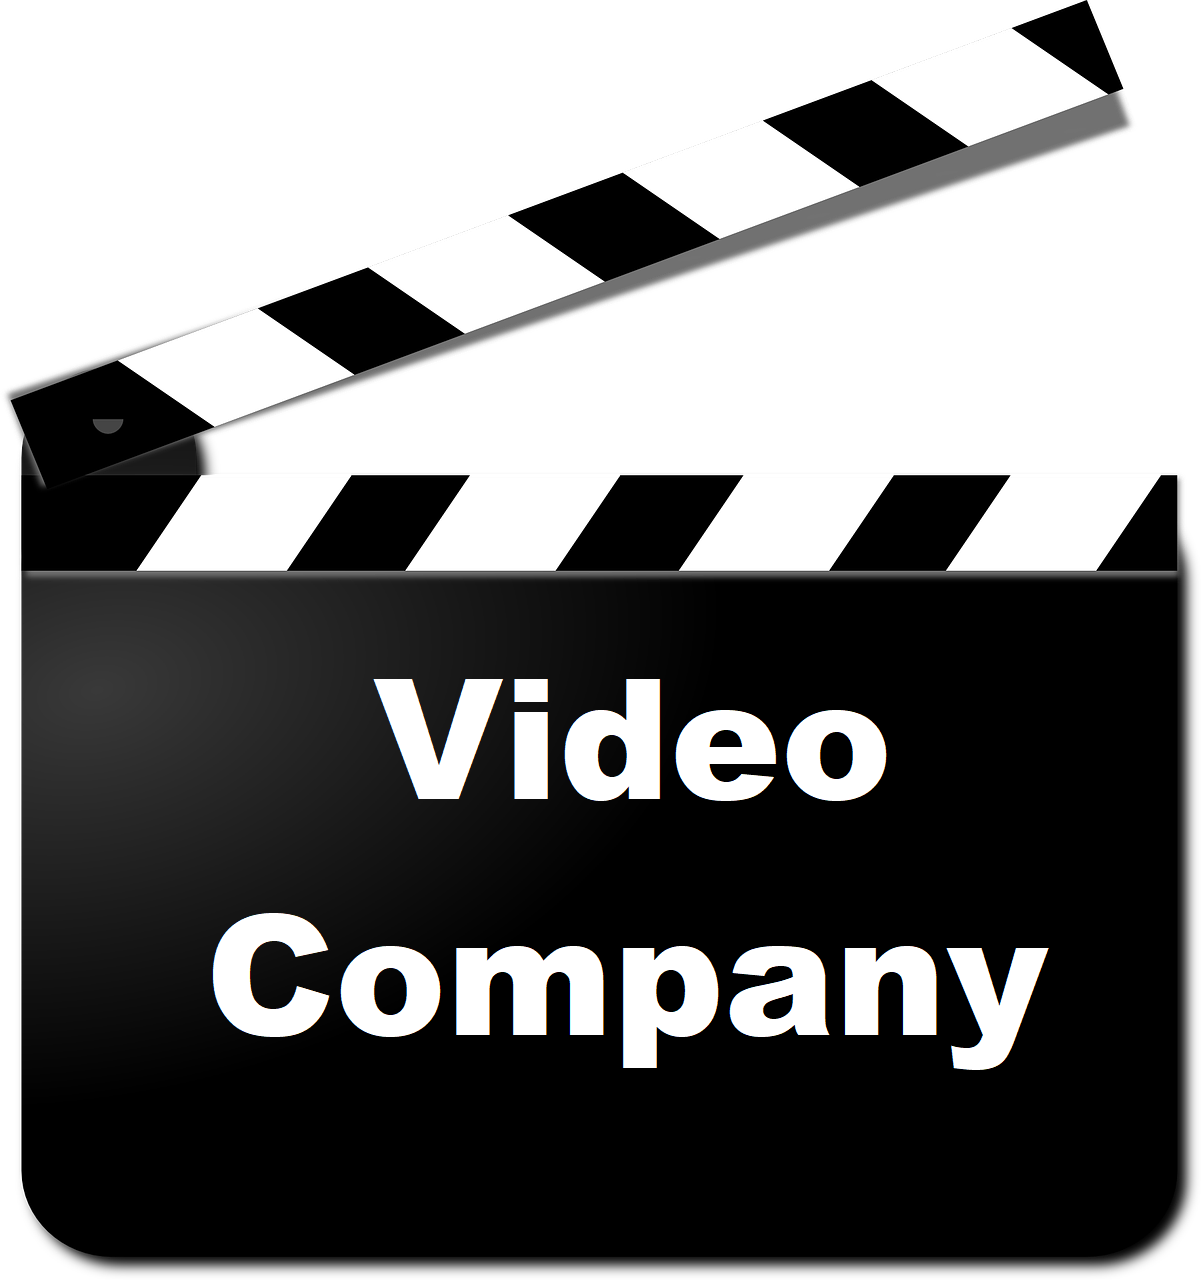 Video Company